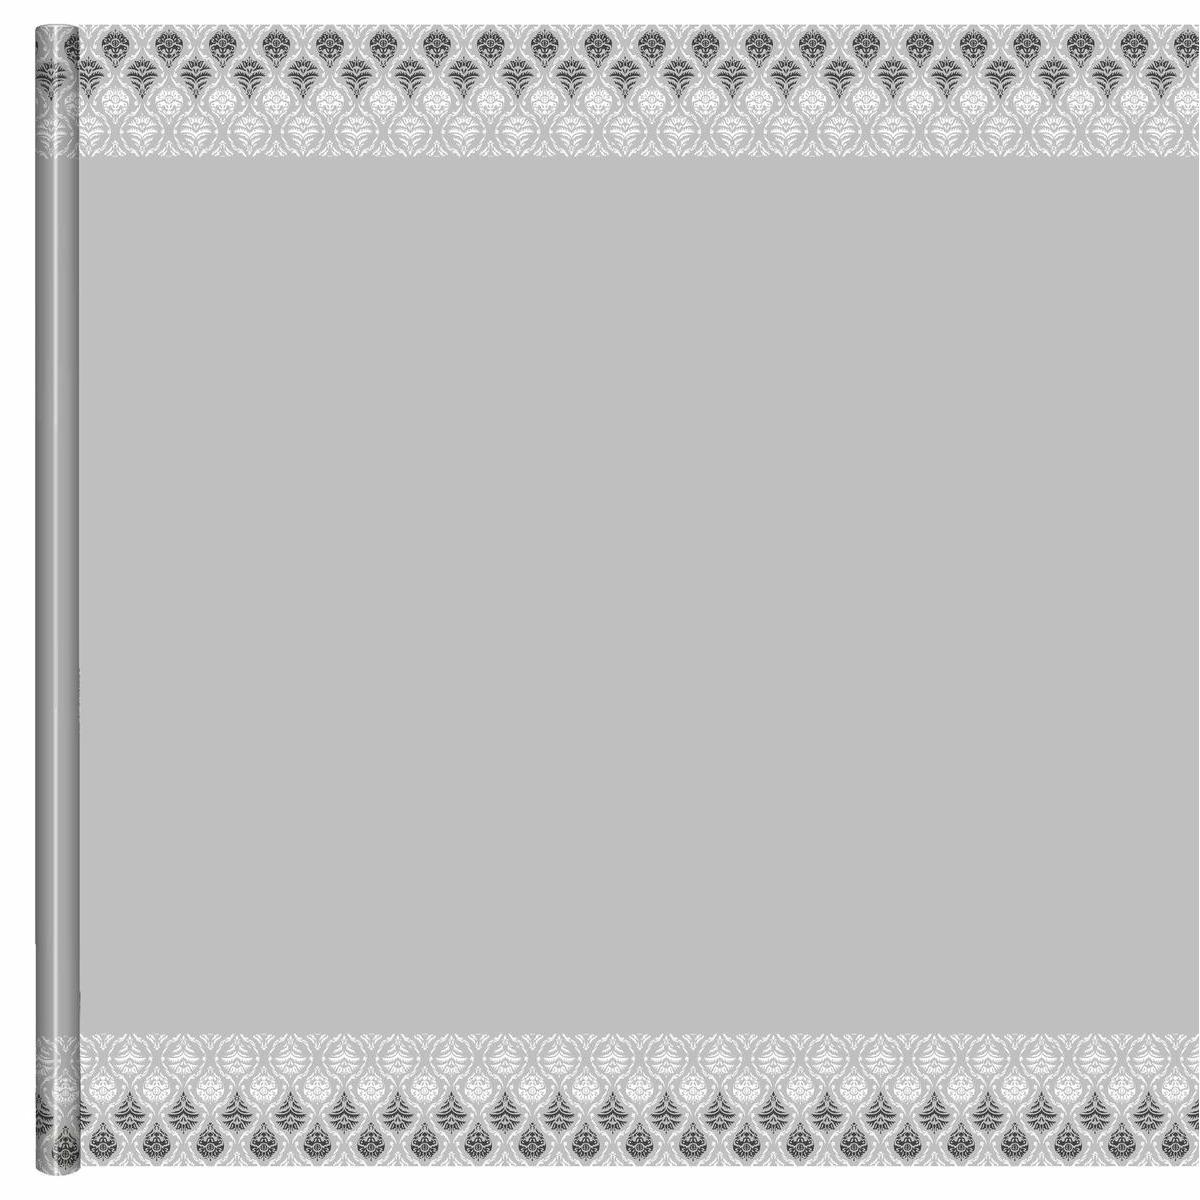 Nappe - Papier - 6 x 1,18 m - Blanc, gris et noir